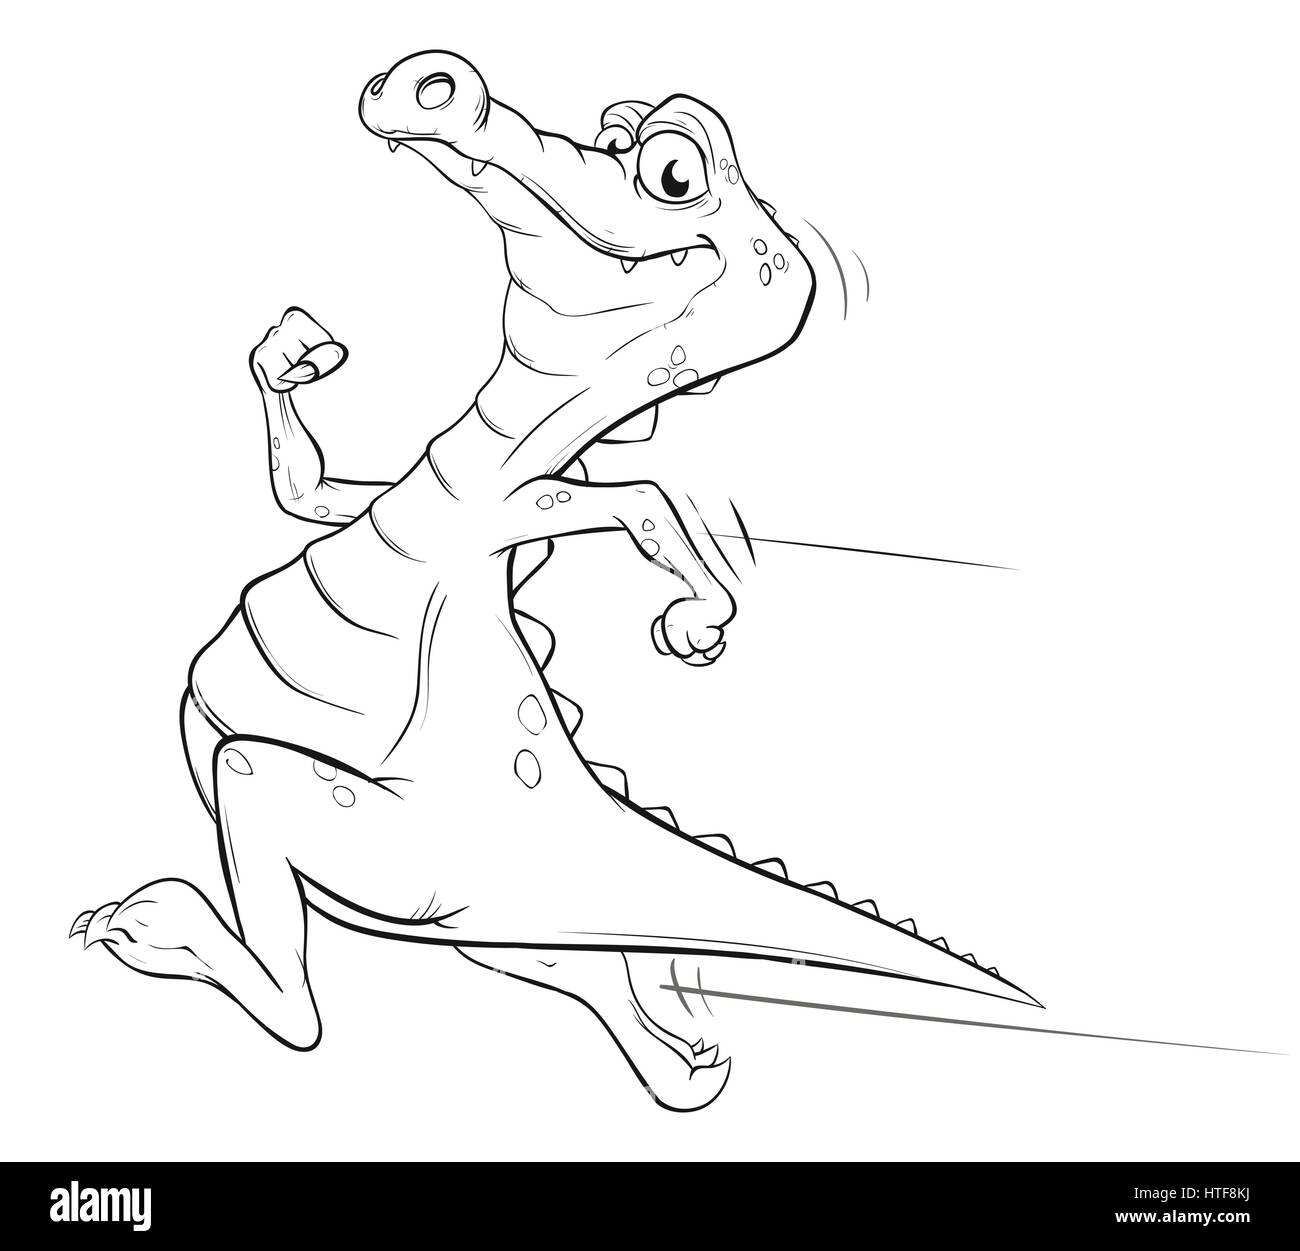 Buchillustration von einem Krokodil Färbung Stock Vektor